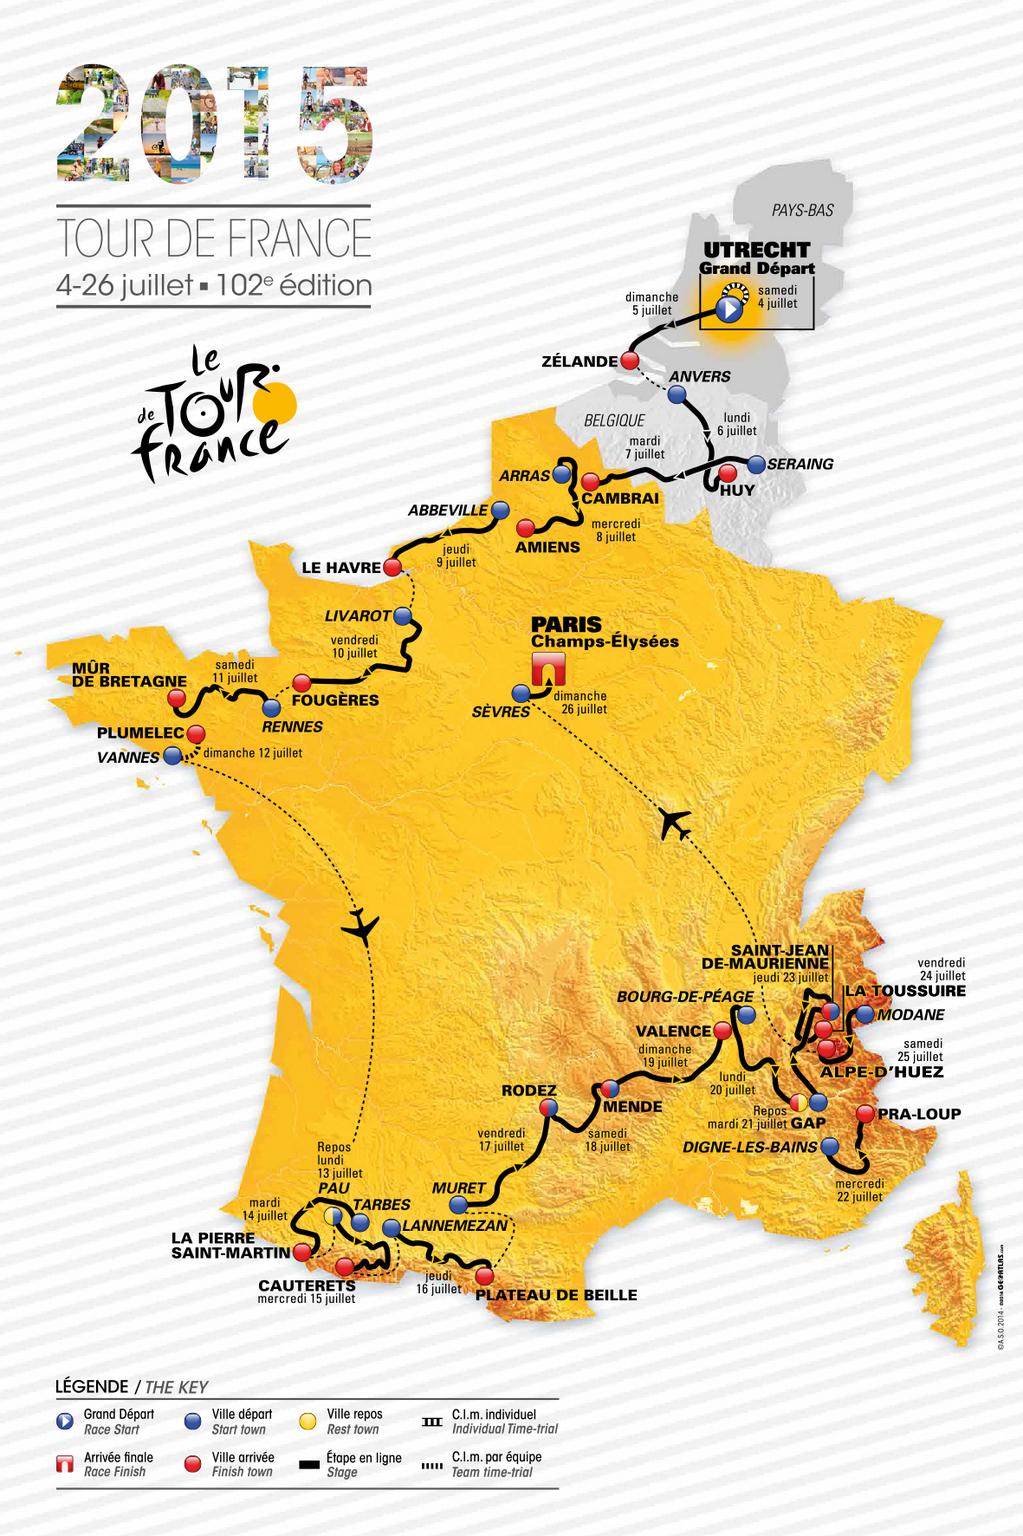 Le Tour de France 2015 ét. 21 : Victoire d’André Greipel (Loto) devant Bryan Coquard (Europcar)